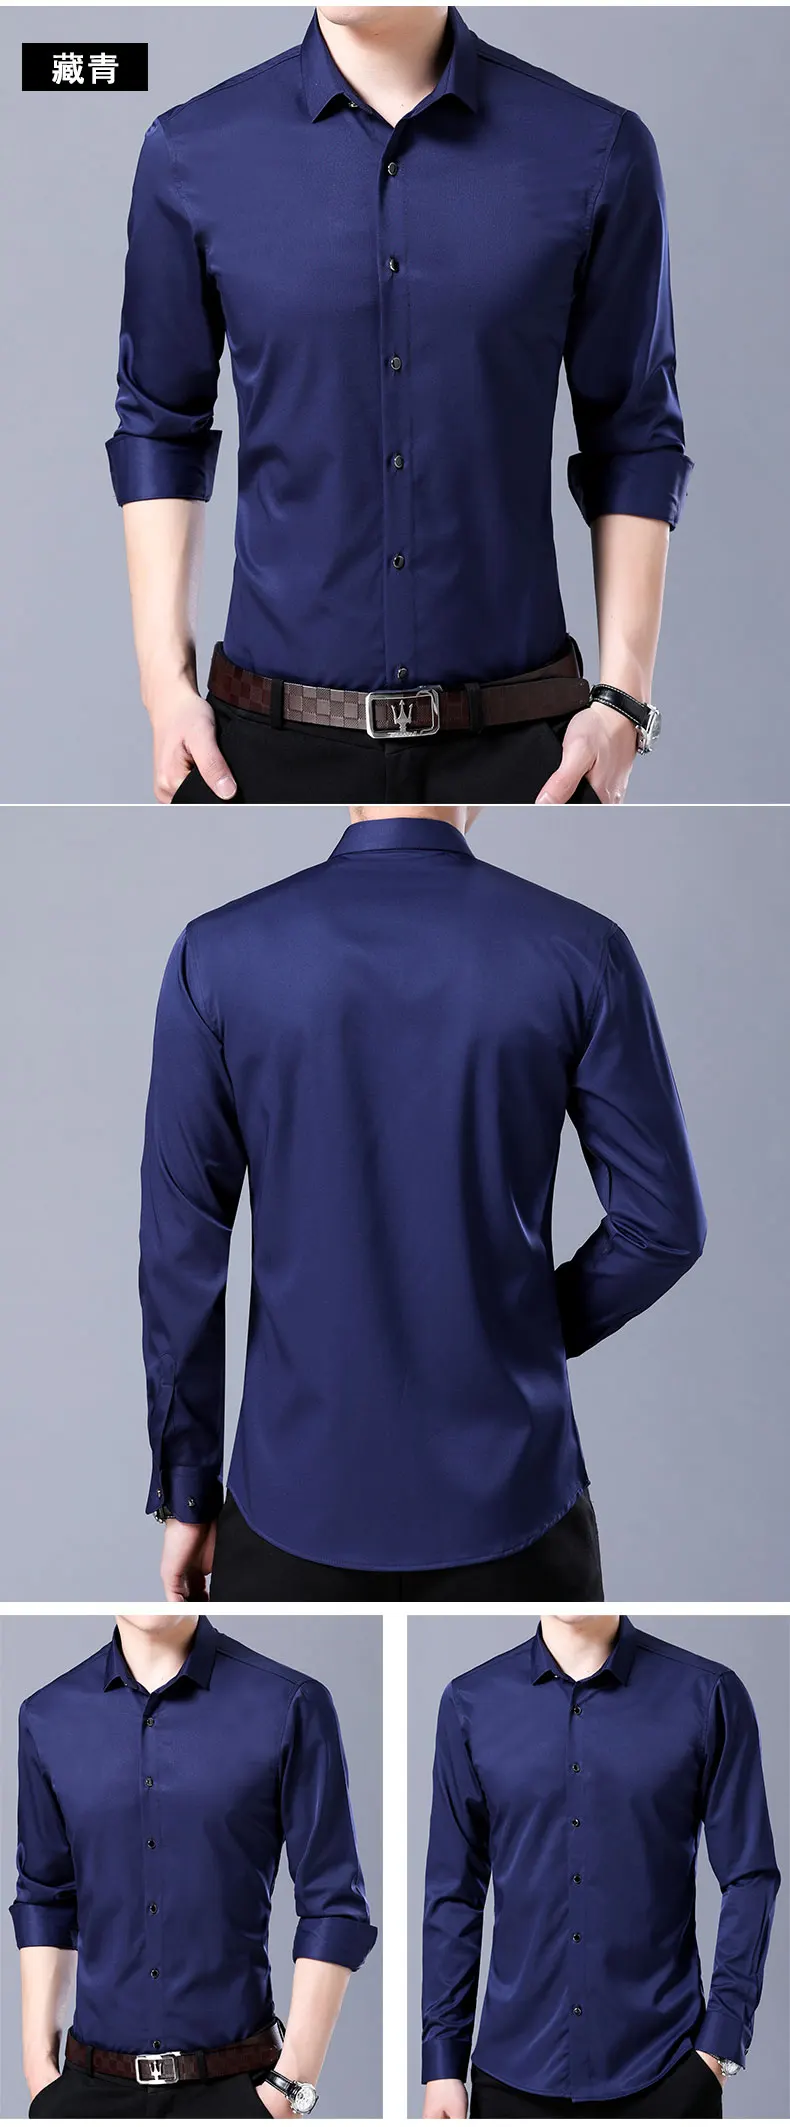 9 цветов Высокое качество Мужская классическая рубашка 2019 новый бизнес повседневная мужская рубашка с длинными рукавами модная мужская